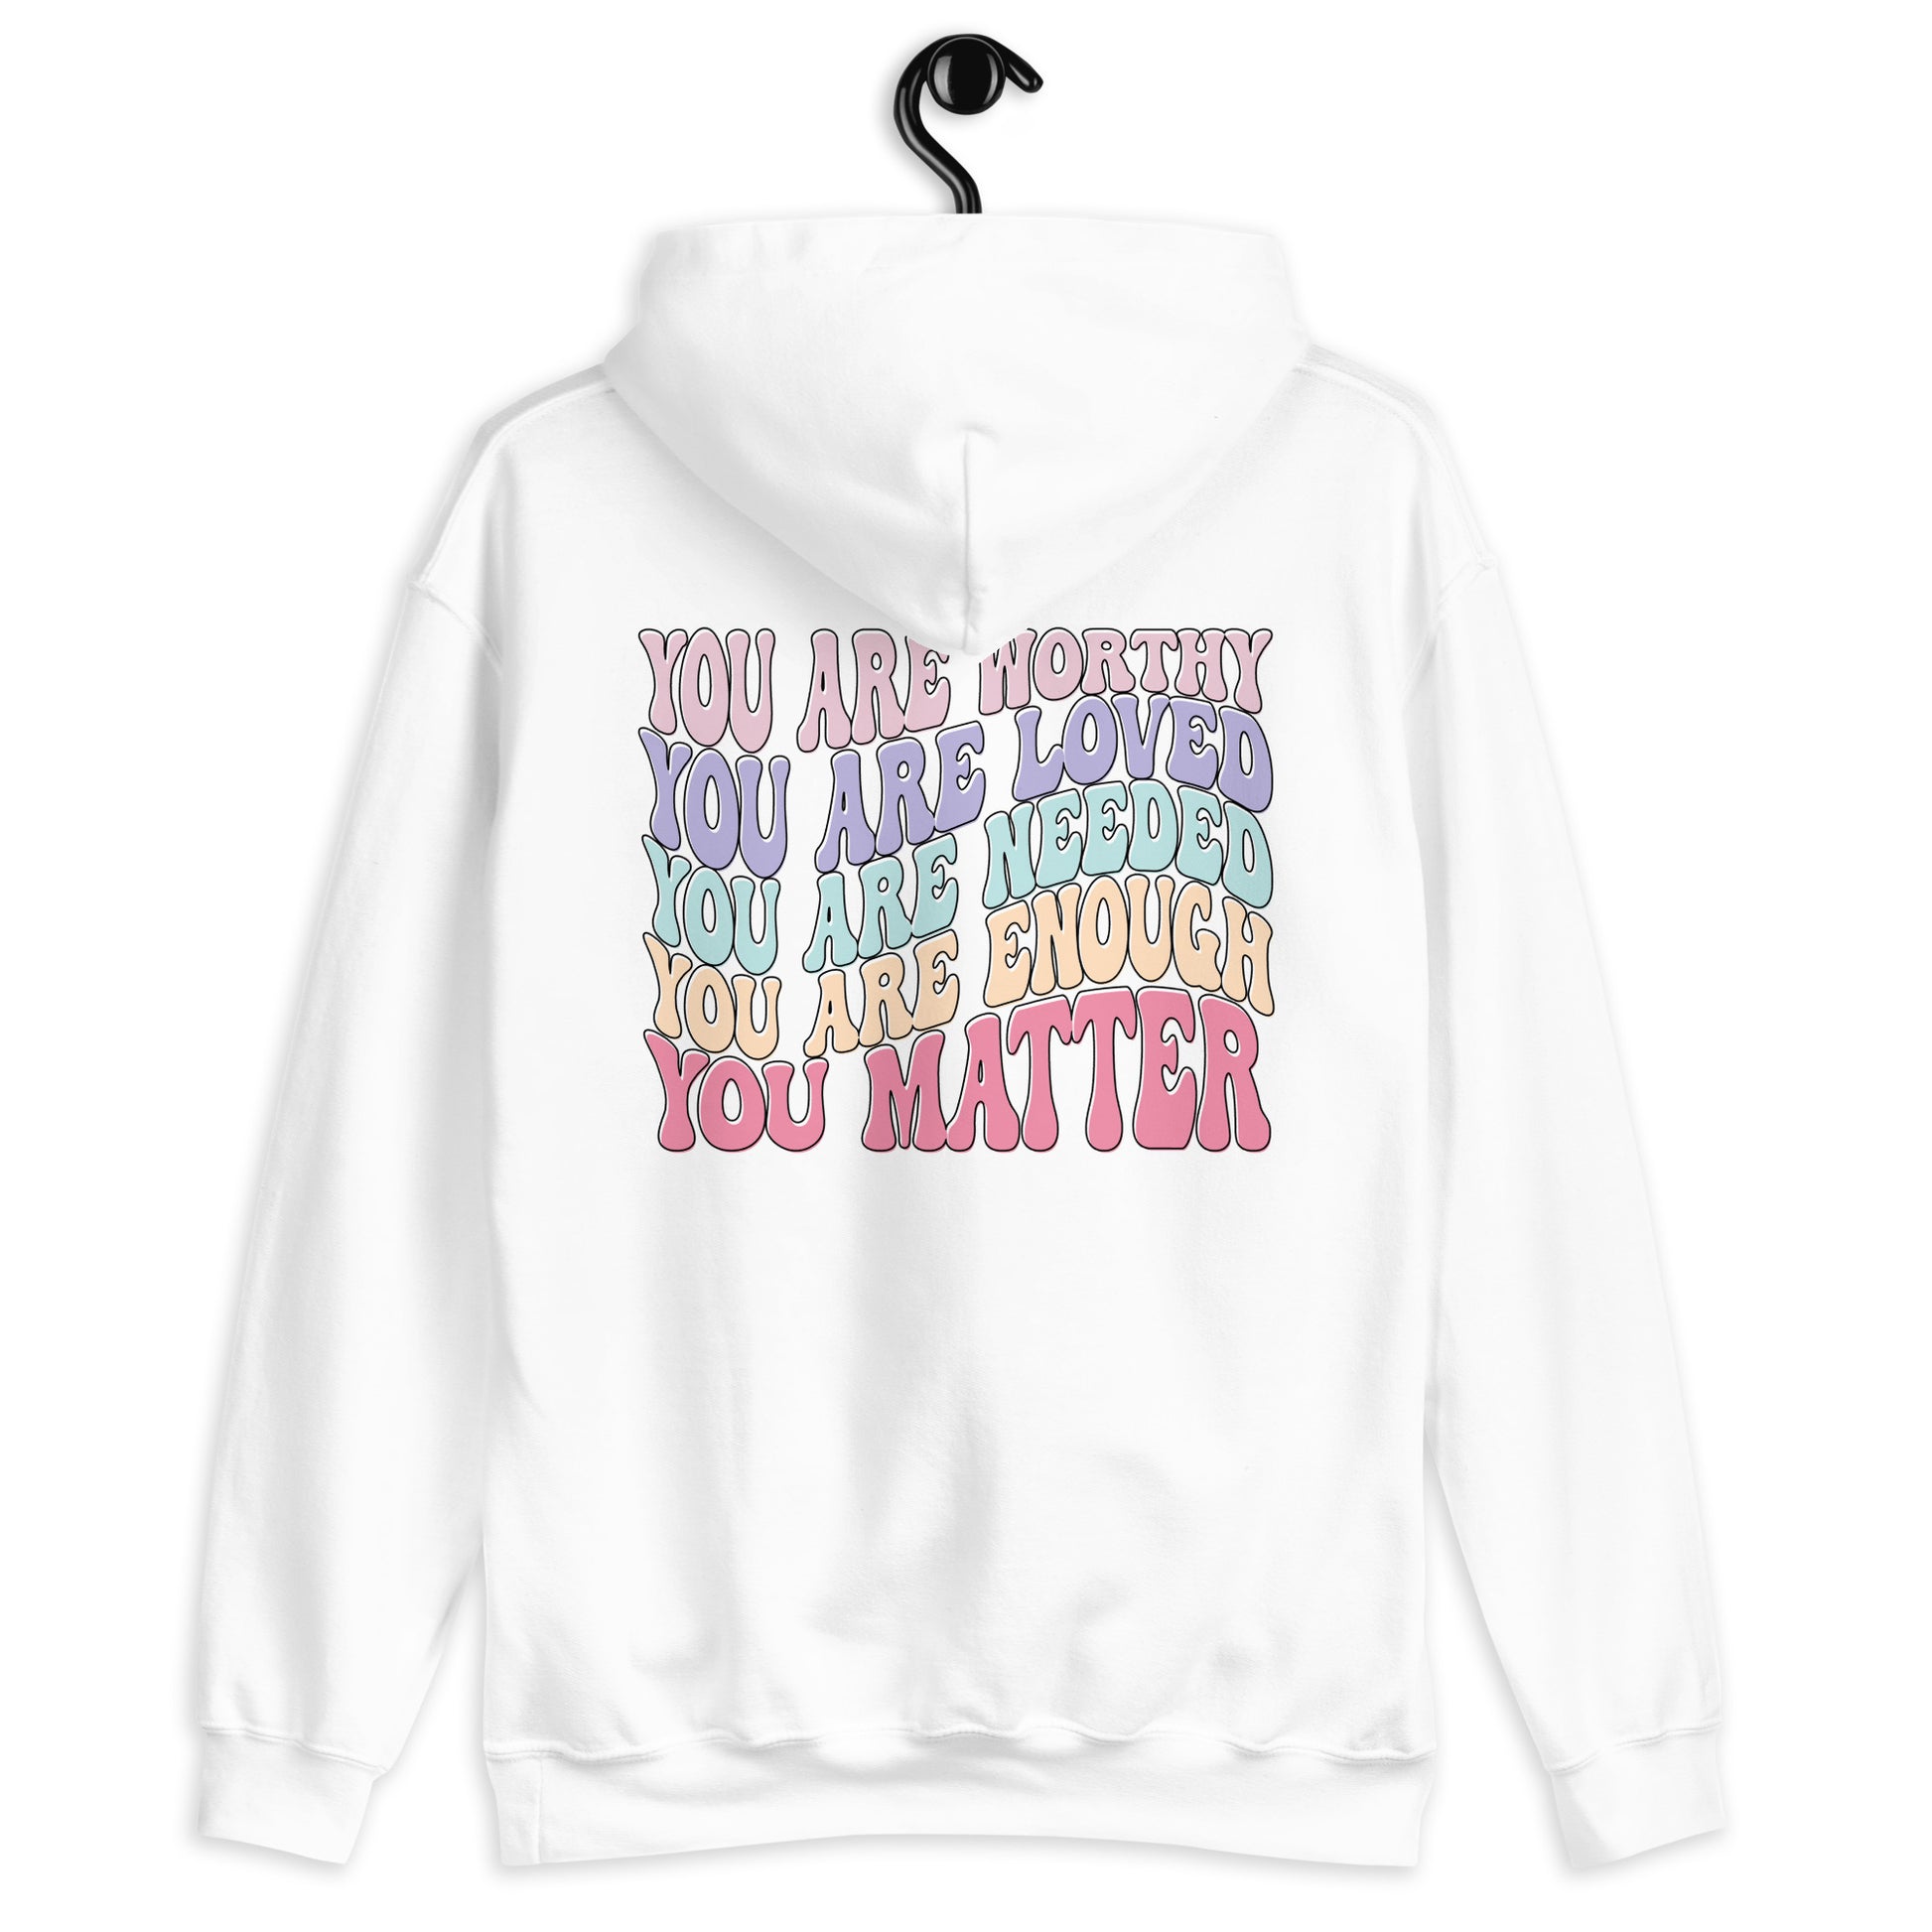 Ladies "You Matter" Unisex Hoodie - Premium hoodie from Gift Me A Break - Just $42! Shop now at giftmeabreak